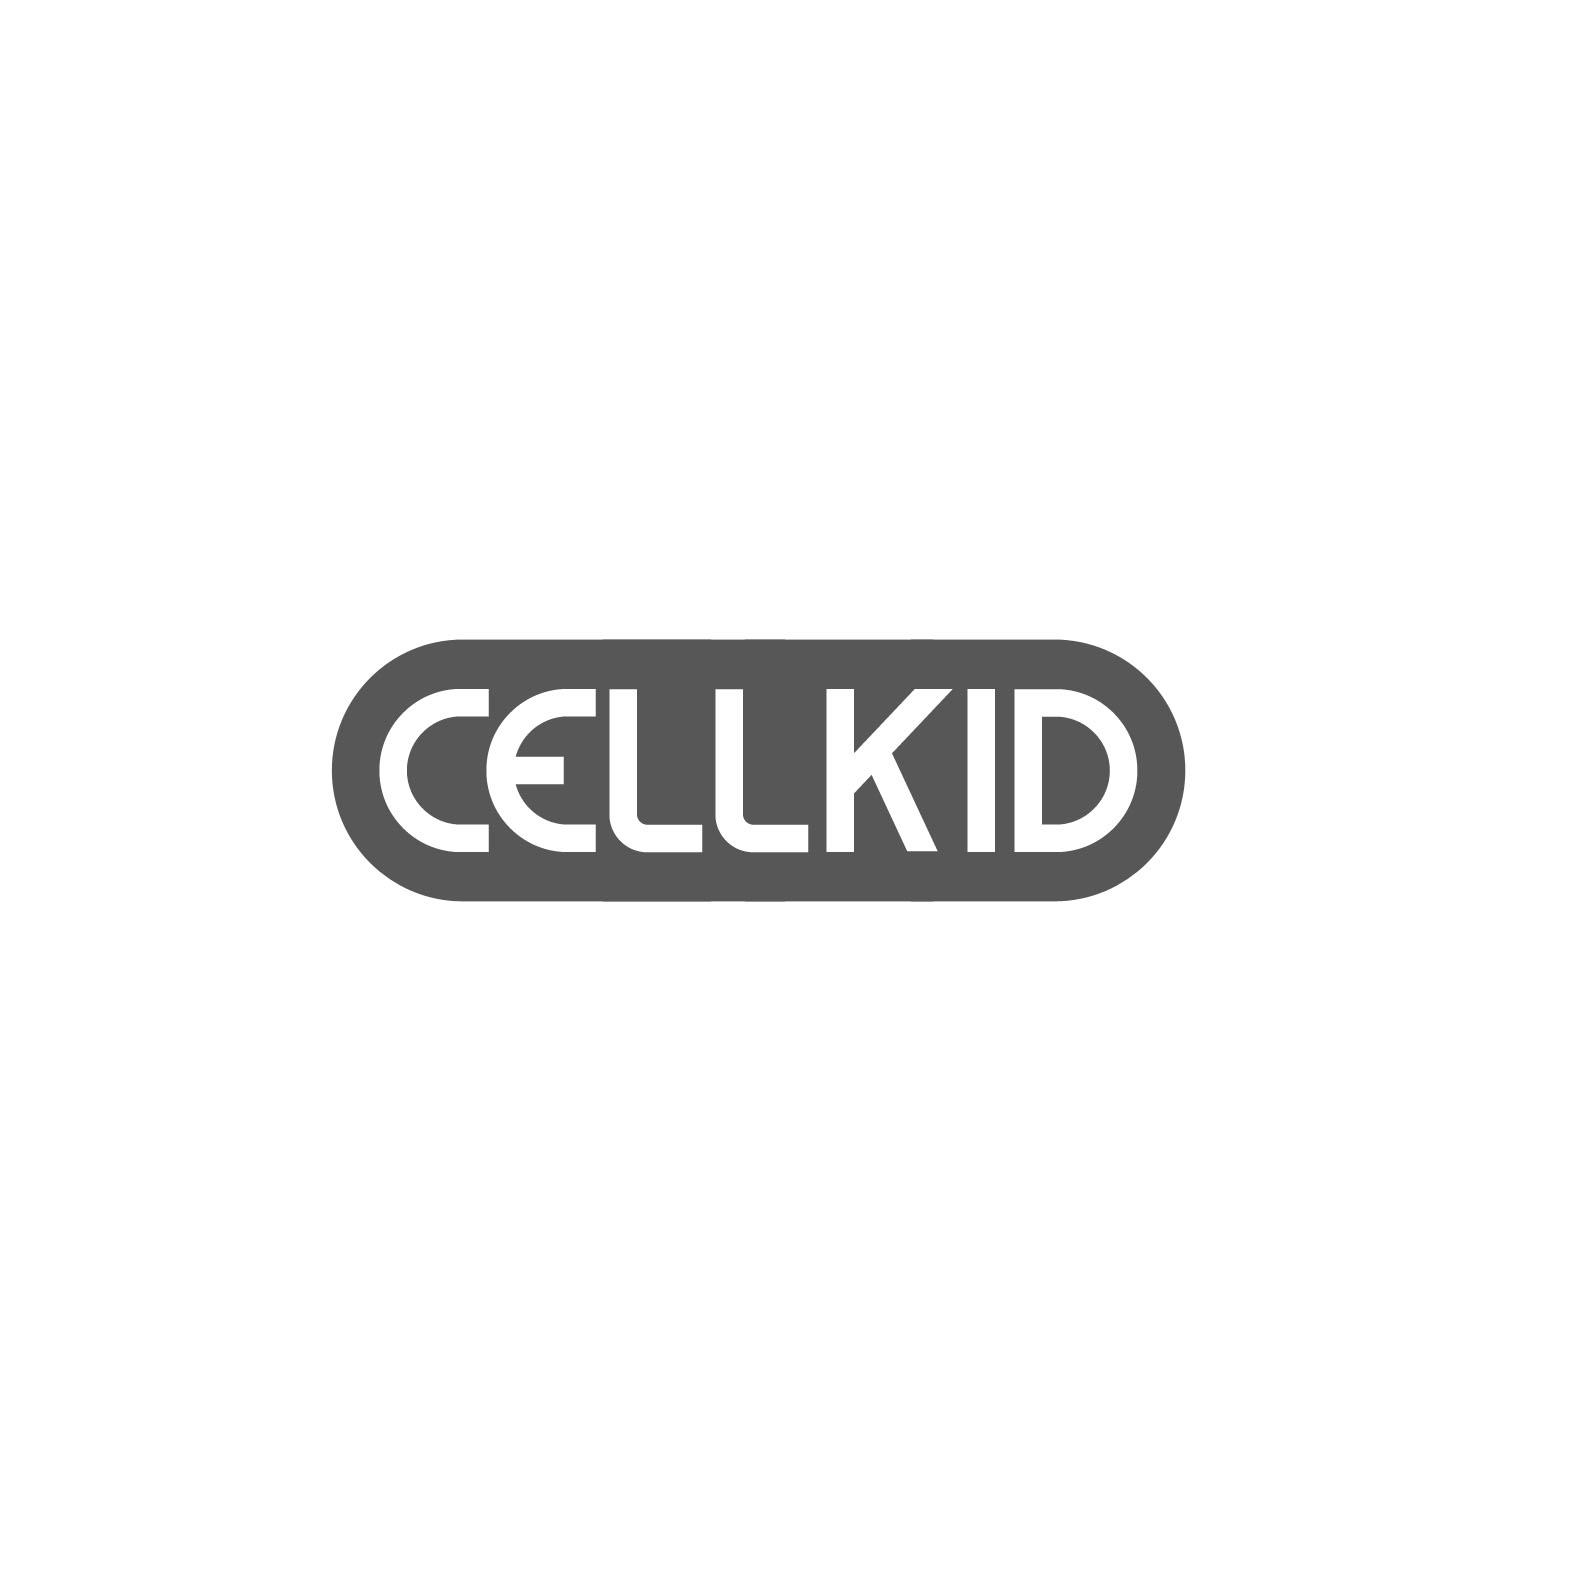 42类-网站服务CELLKID商标转让